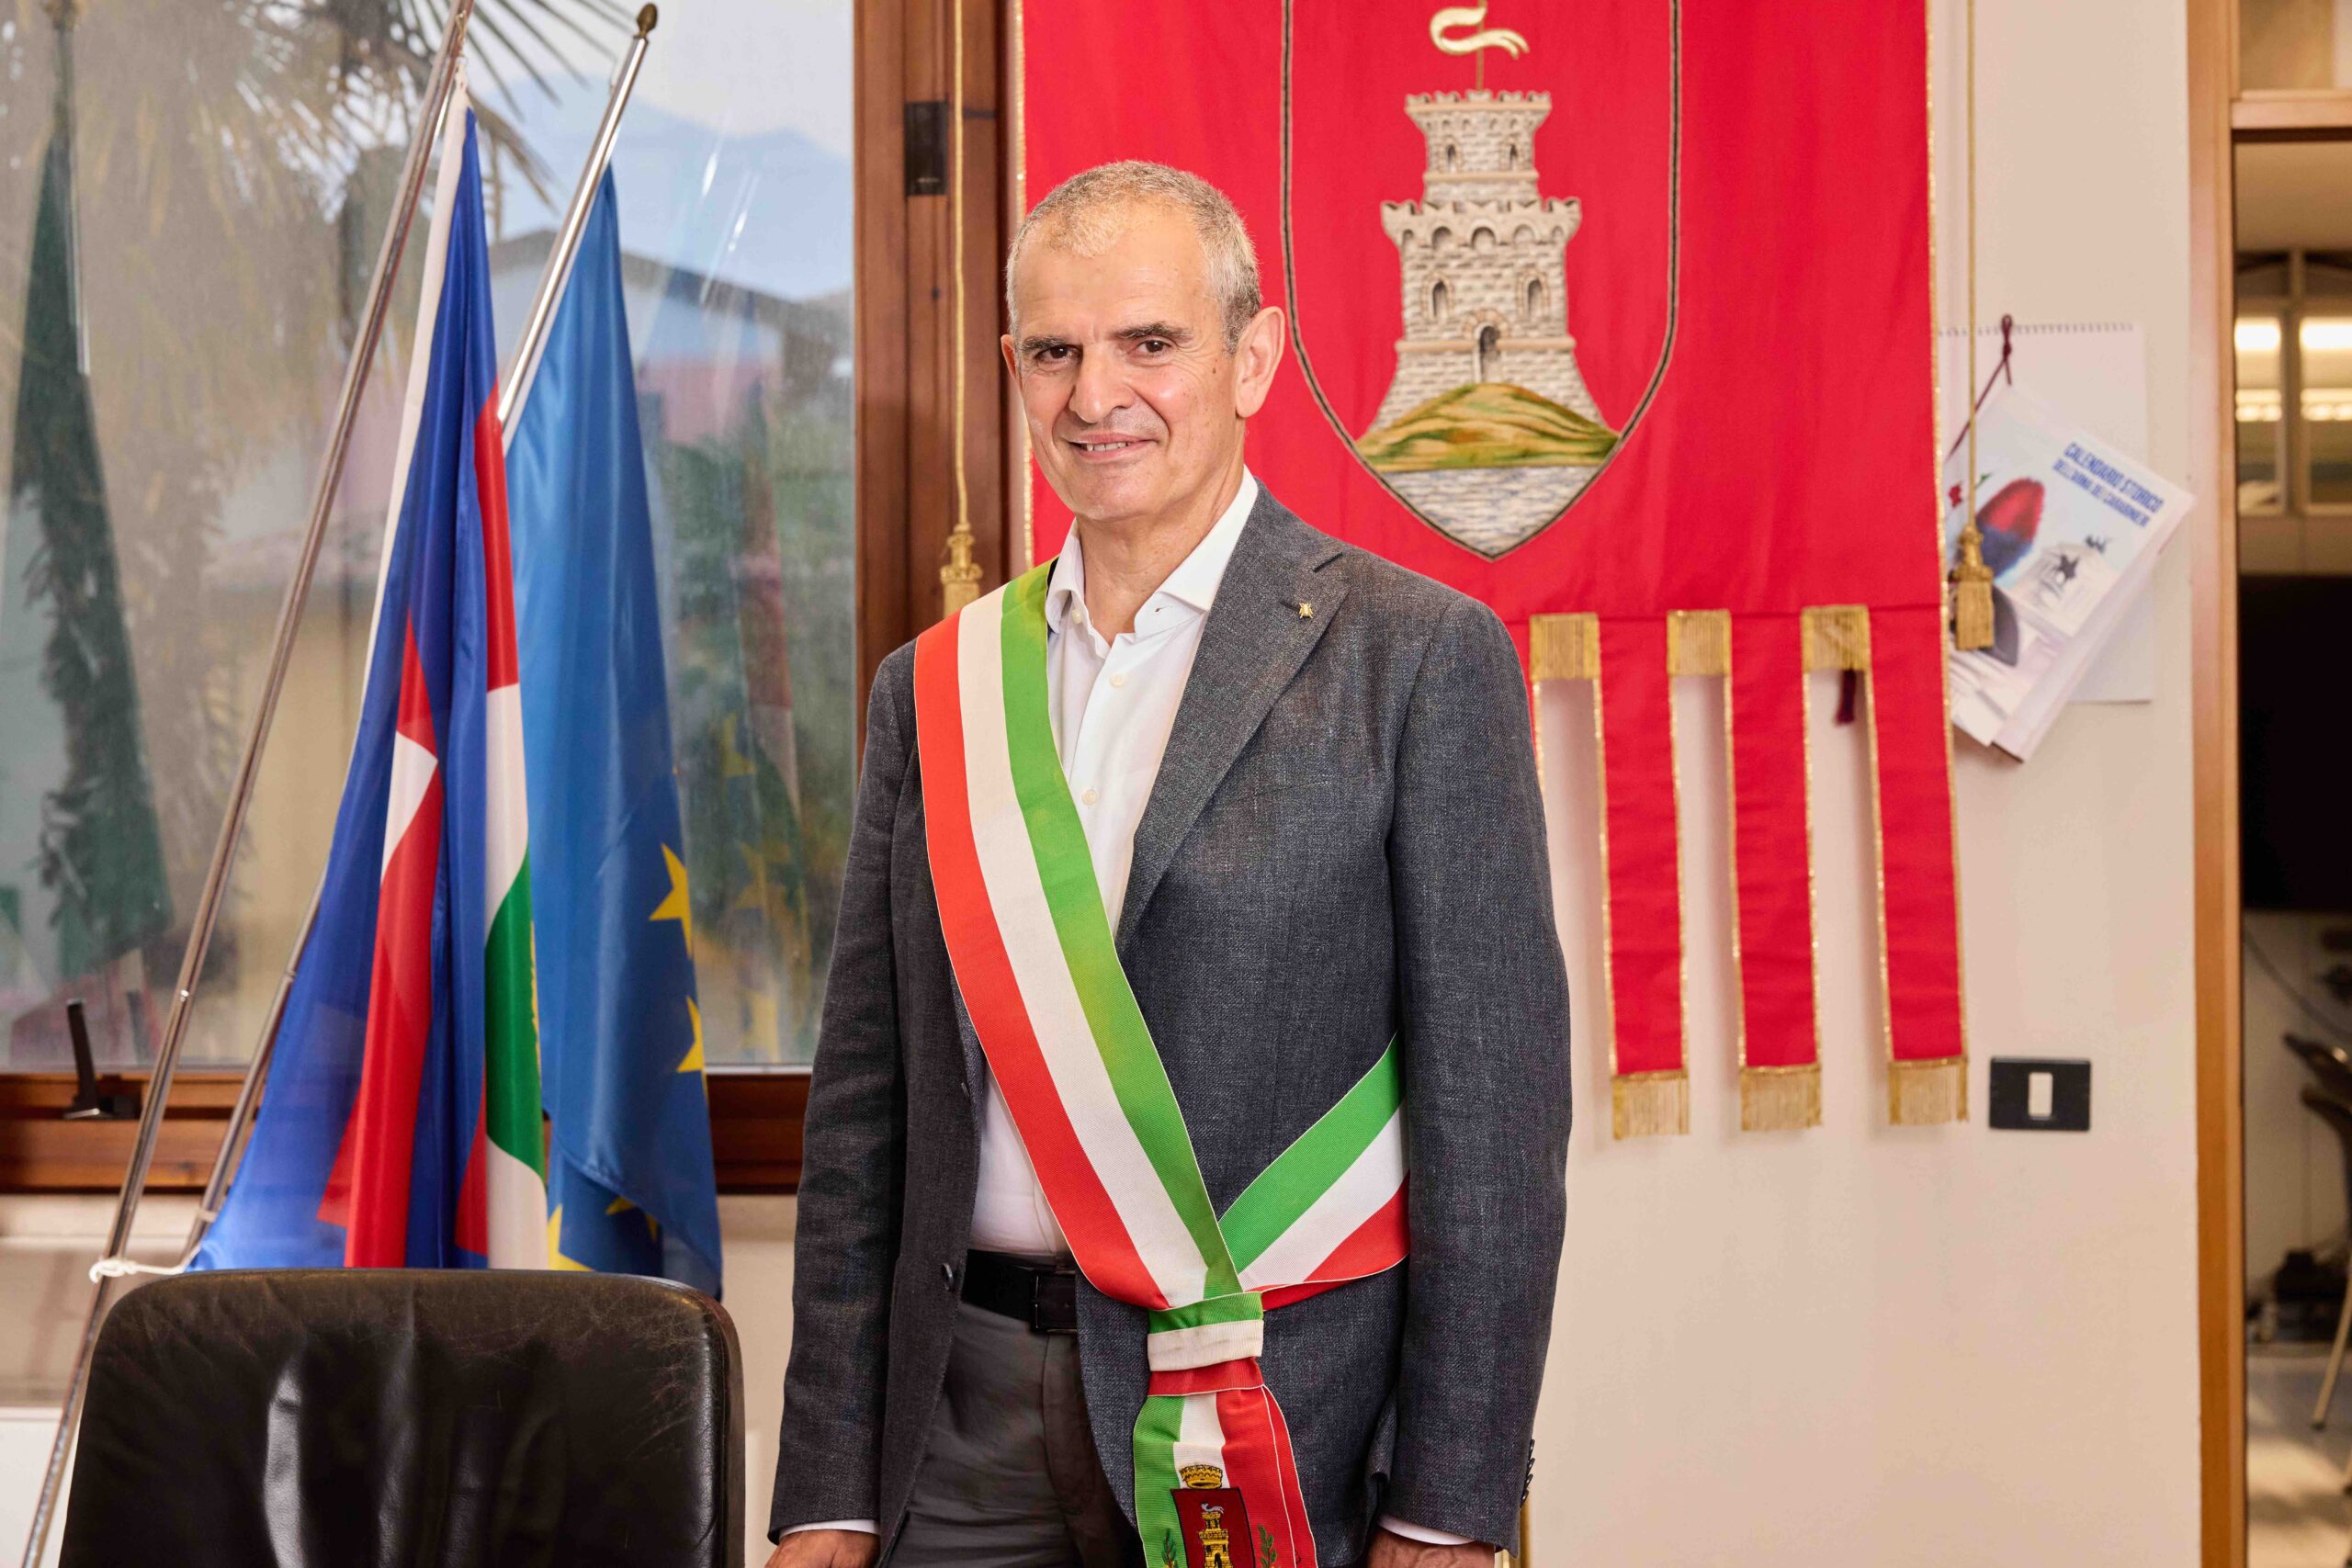 Giuseppe Benamati assume l’incarico di Sindaco di Malcesine: la giunta, le deleghe e obiettivi per il futuro